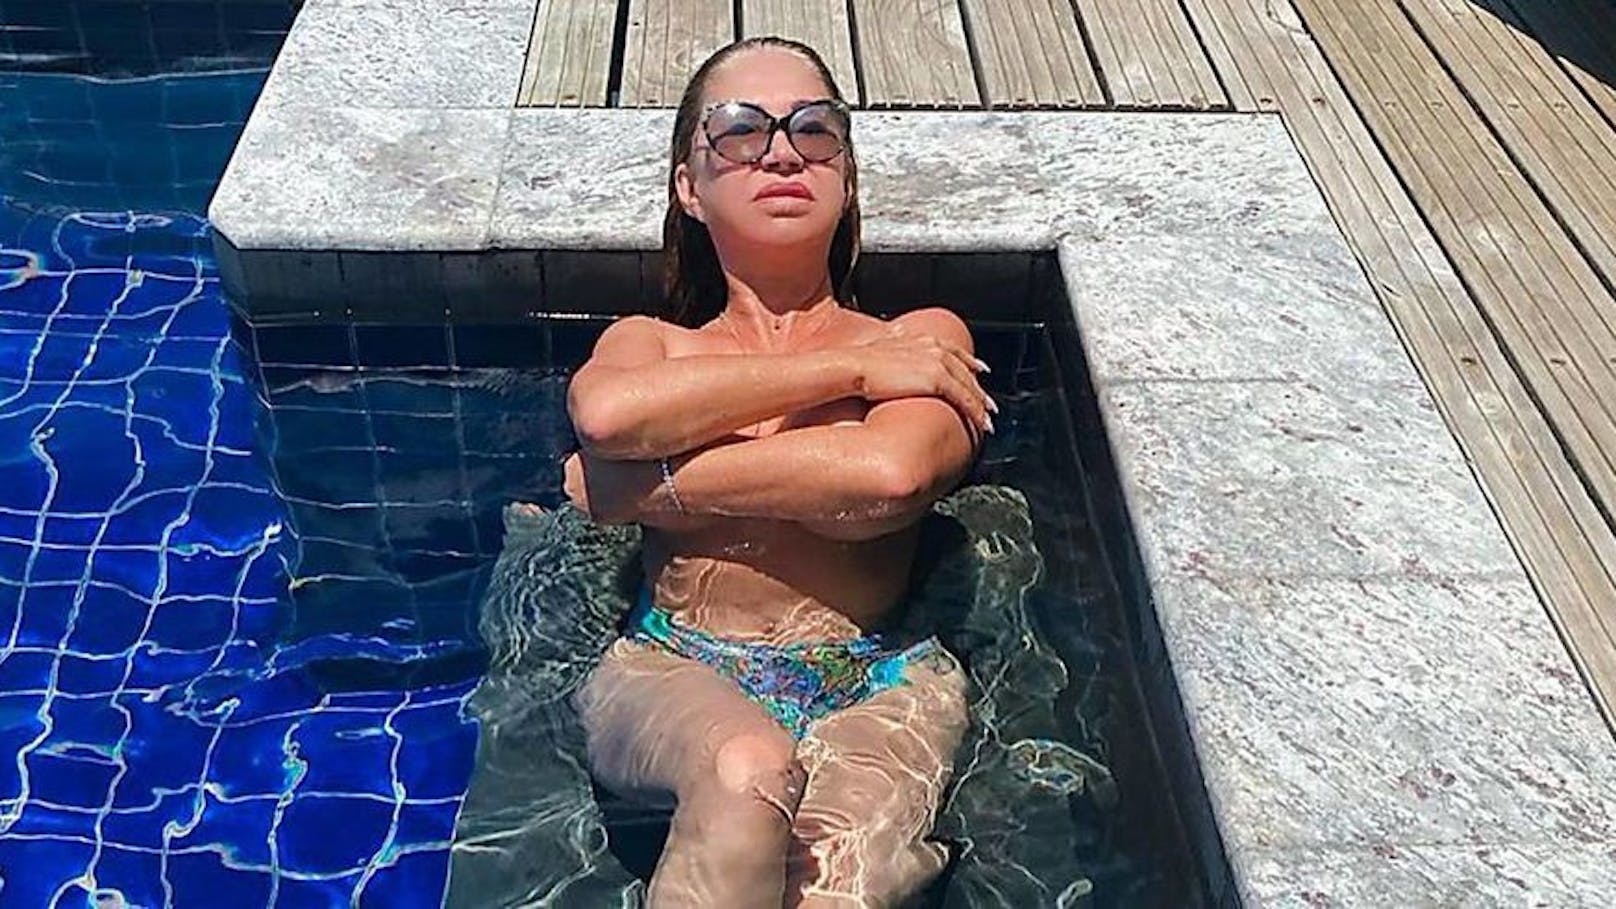 Carmen Geiss nackt im Pool – kassiert Shitstorm